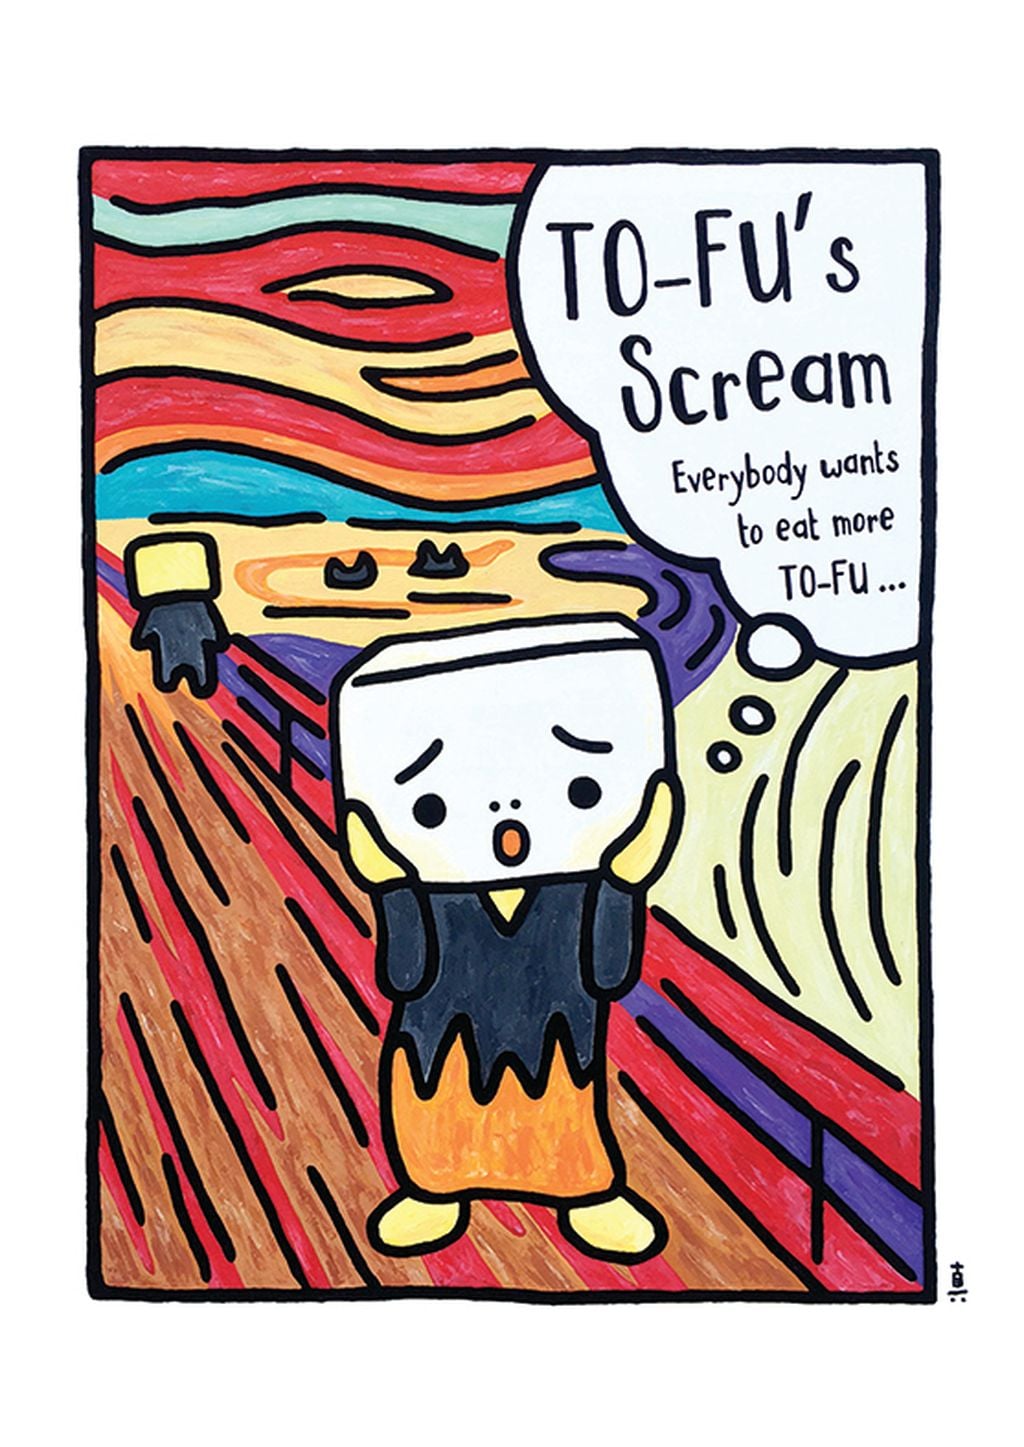 北井真一郎创作了豆腐家族角色，为是次展览特别创作了恶搞世界名画系列，其中之一是《 To-Fu's Scream 》。